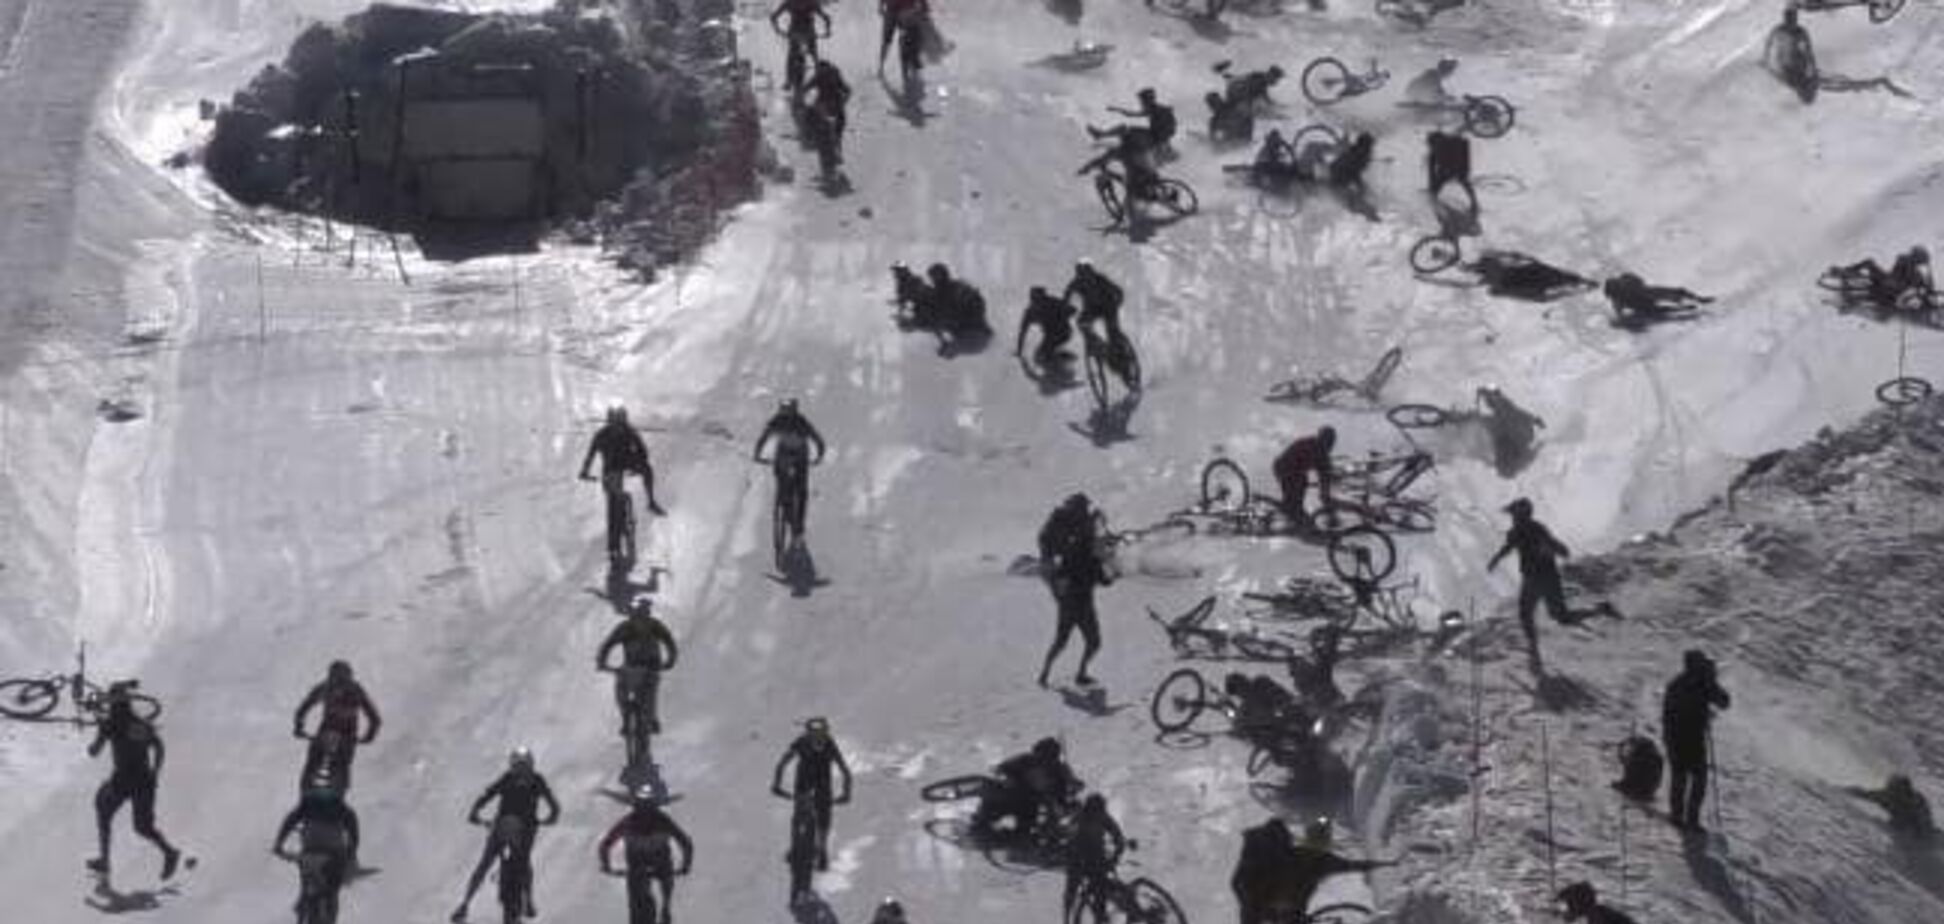 Велосипедисты устроили кошмарное месиво во время спуска с 'Адской горы'